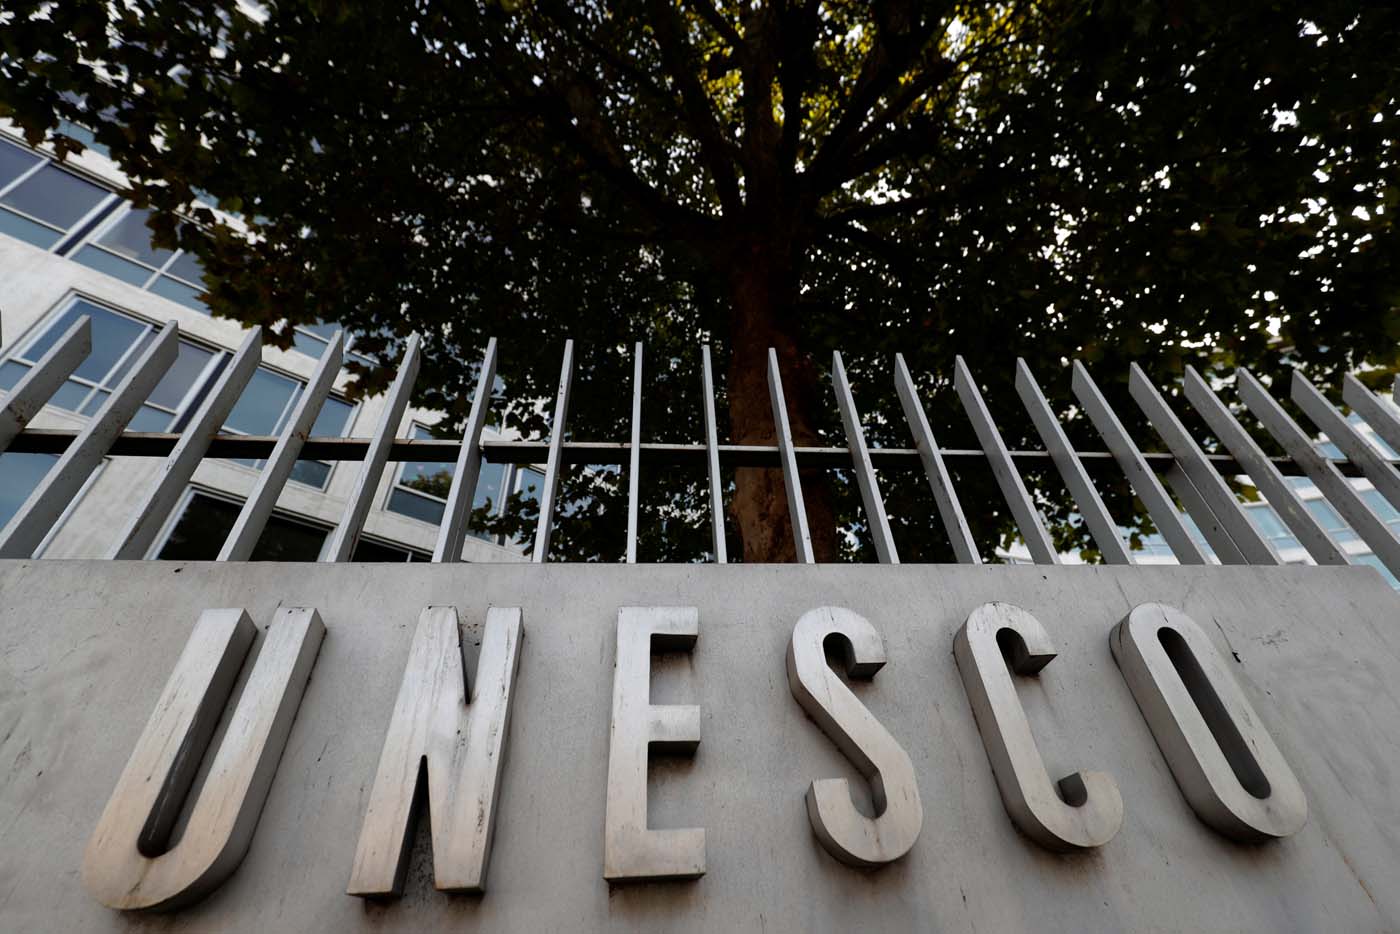 Estados Unidos da la espalda al multilateralismo con su salida de la Unesco